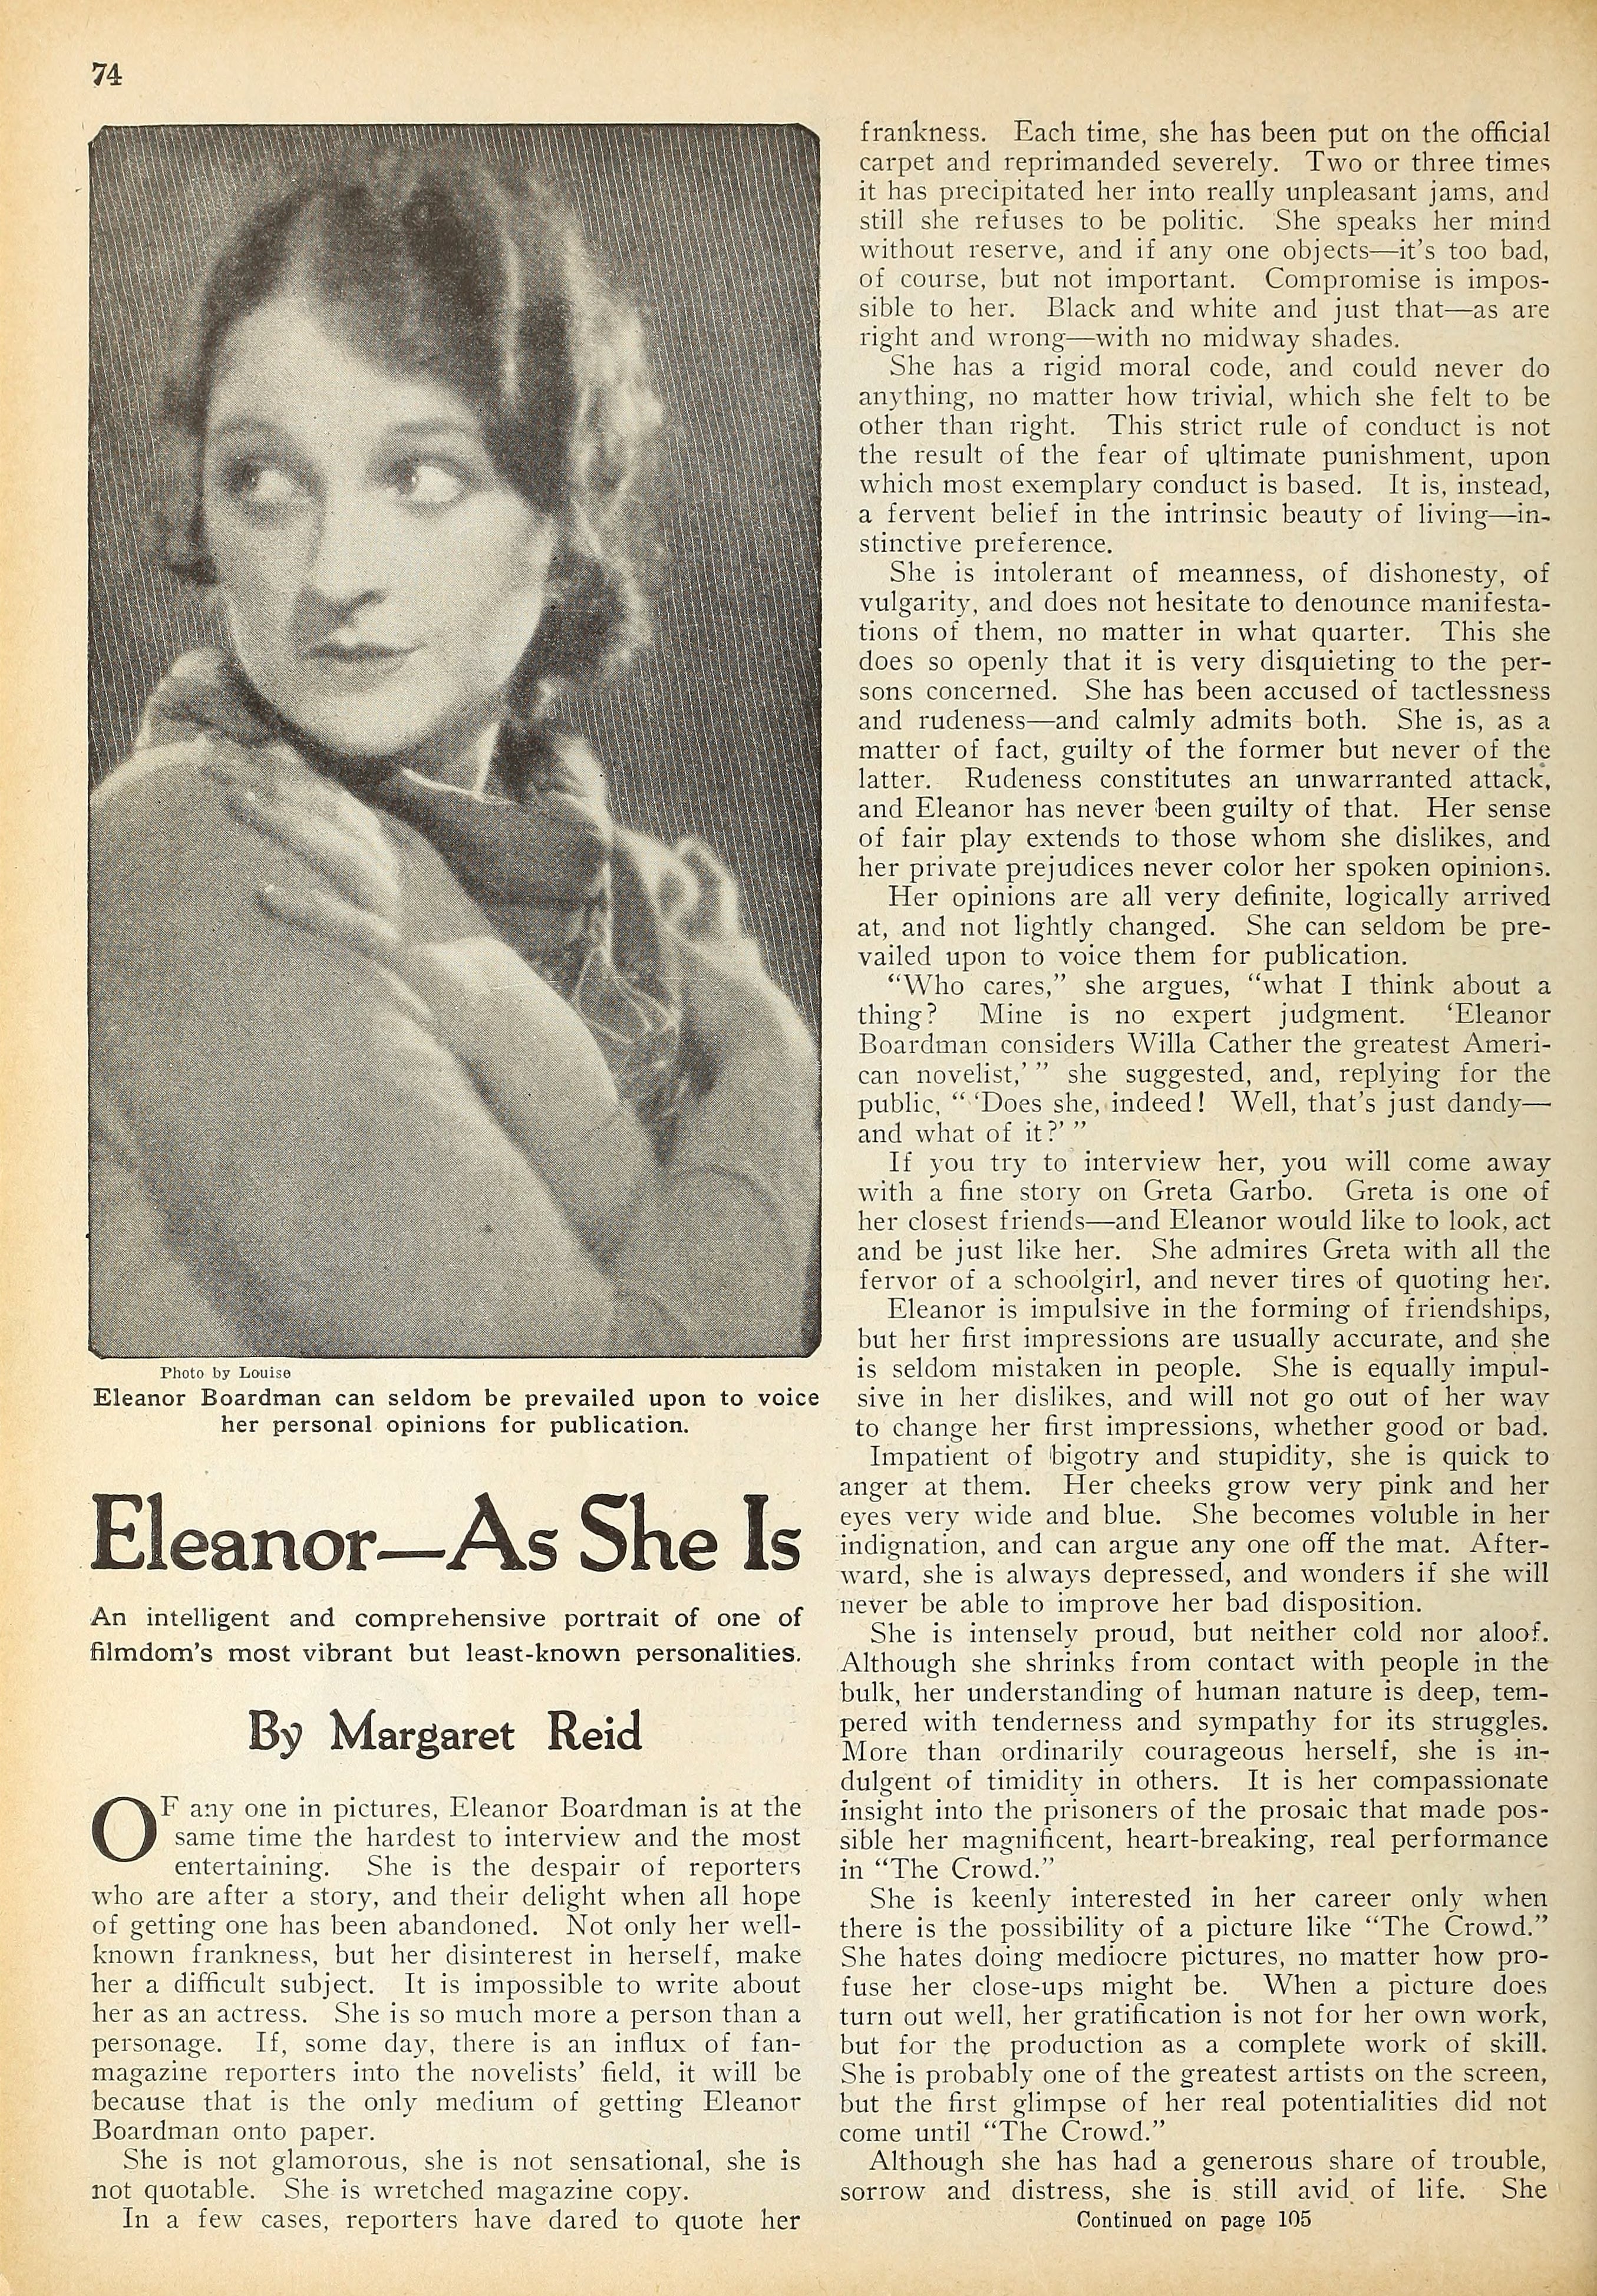 Eleanor Boardman — As She Is (1928) | www.vintoz.com